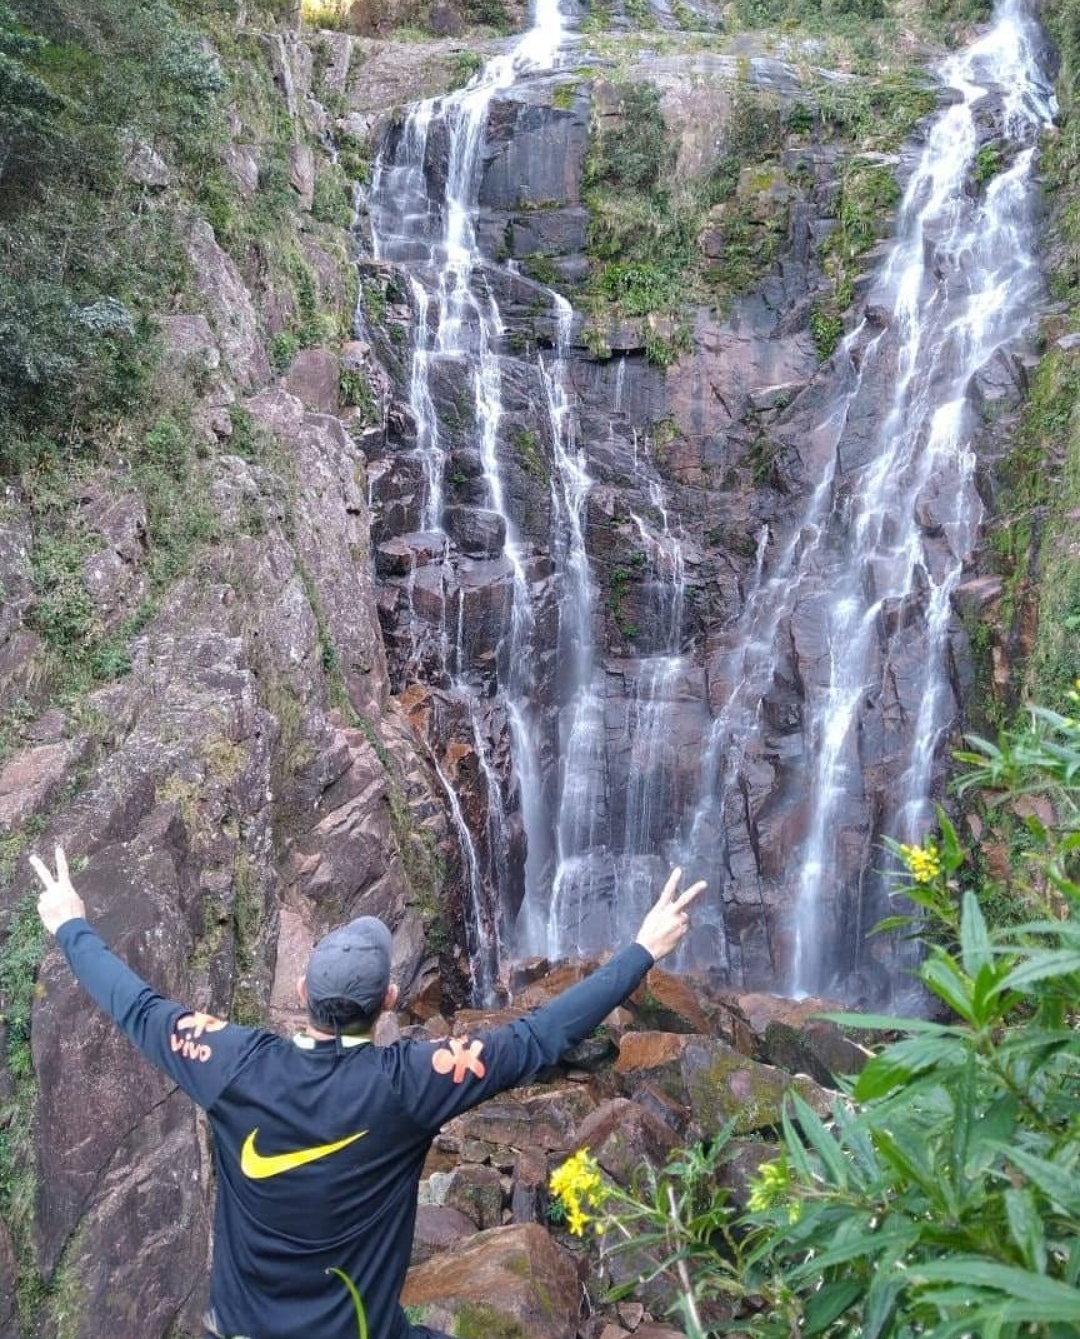 Cachoeira da Agua Branca - Imagem de @cristiano_trilhasristiano